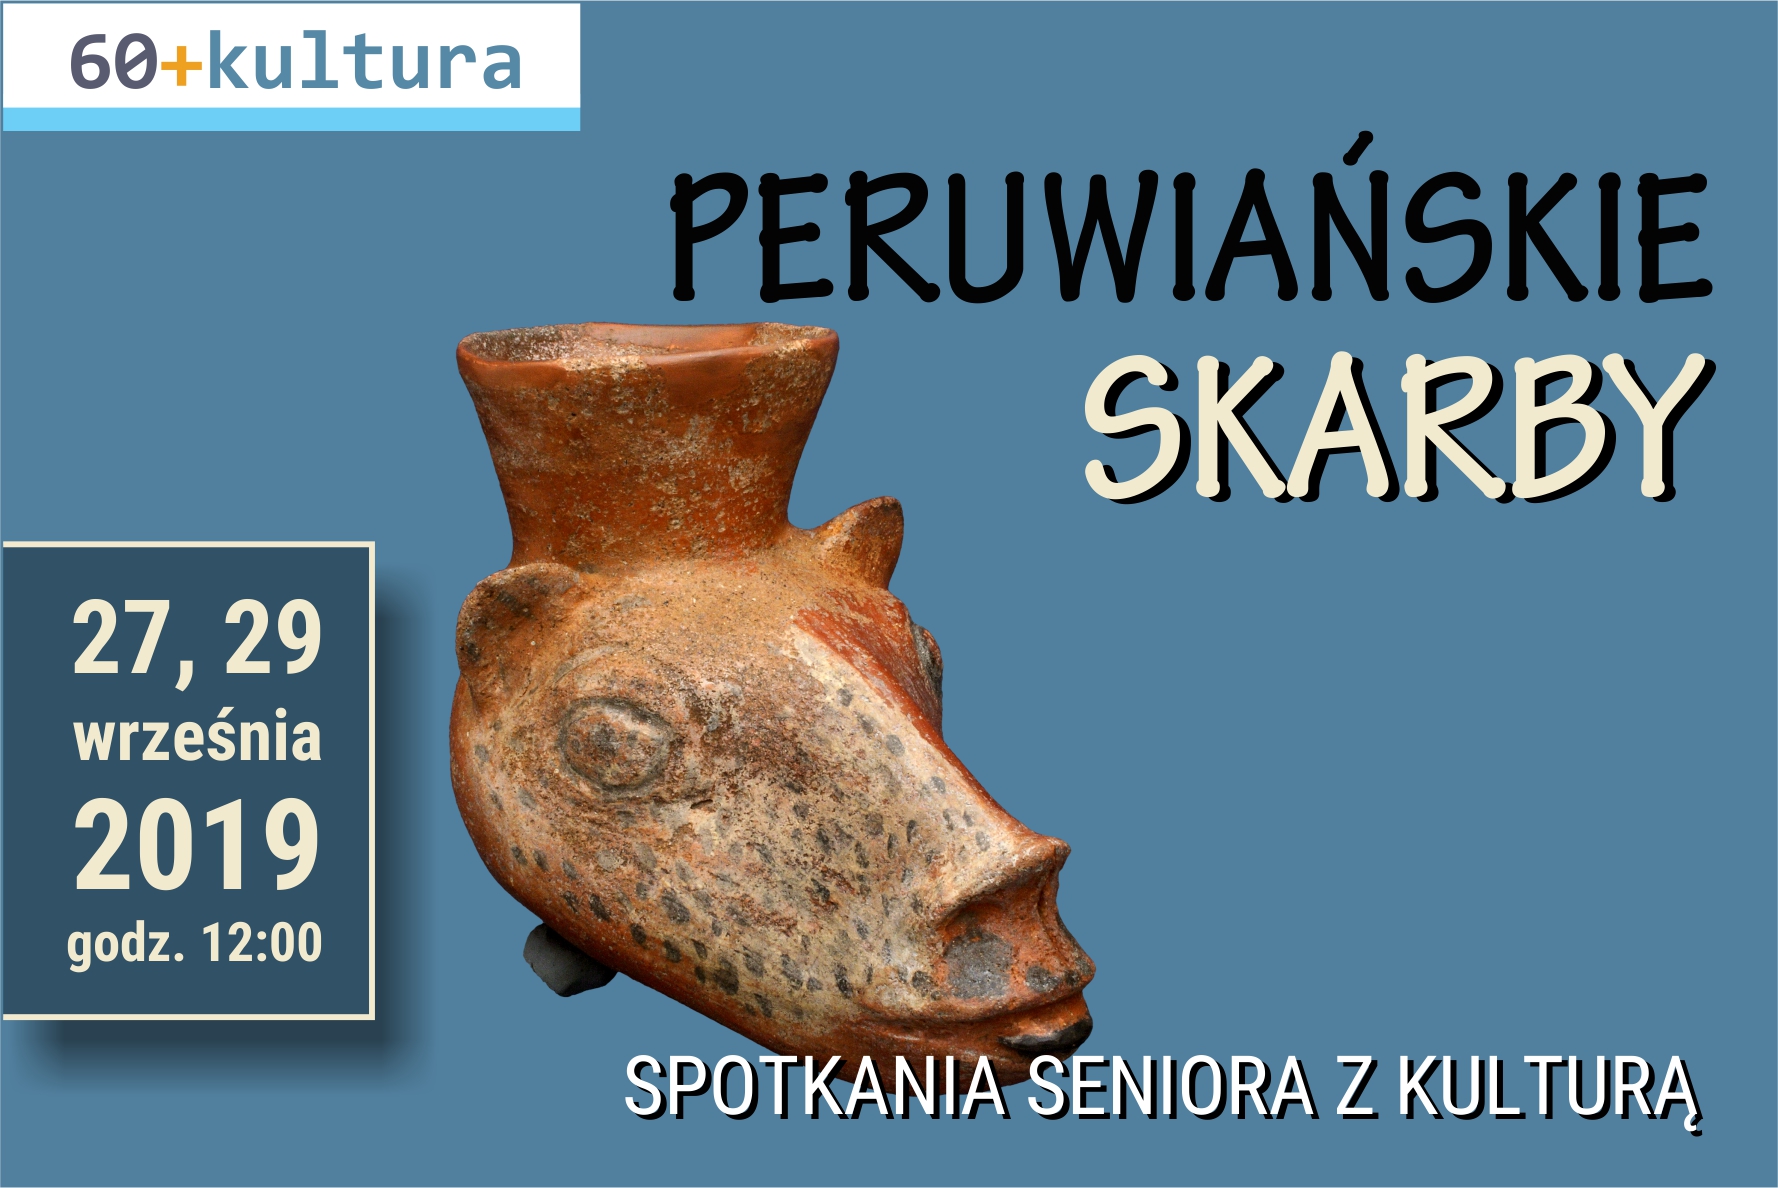 60+ kultura w Muzeum Archeologicznym w Krakowie